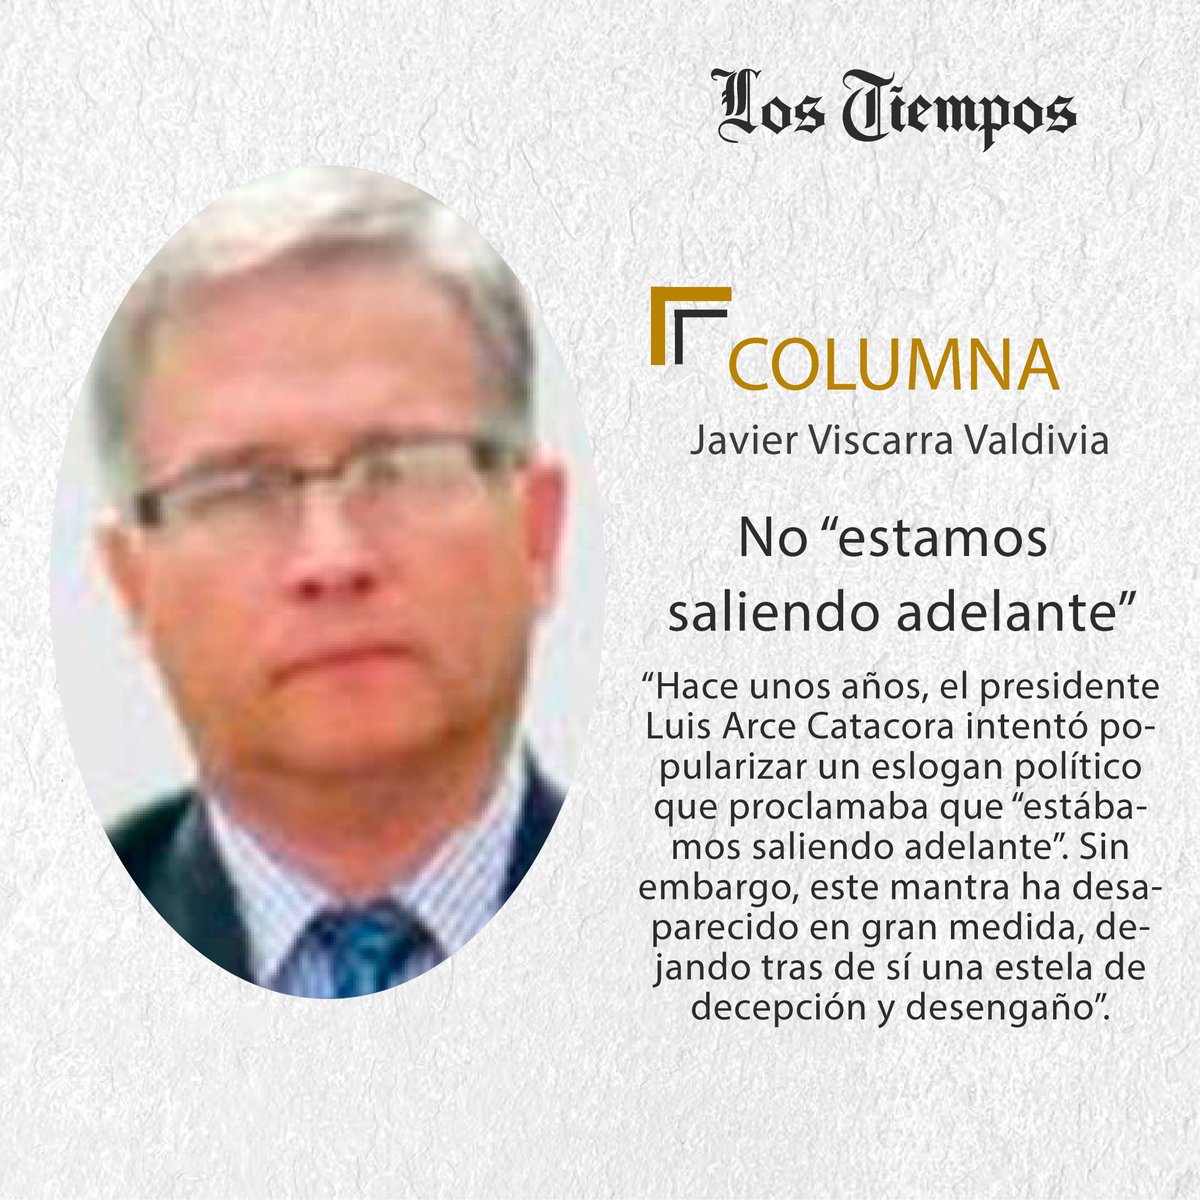 #LTColumna #Puntos de Vista
Lea la columna de Javier Viscarra Valdivia.
👉tinyurl.com/yrj99w3t